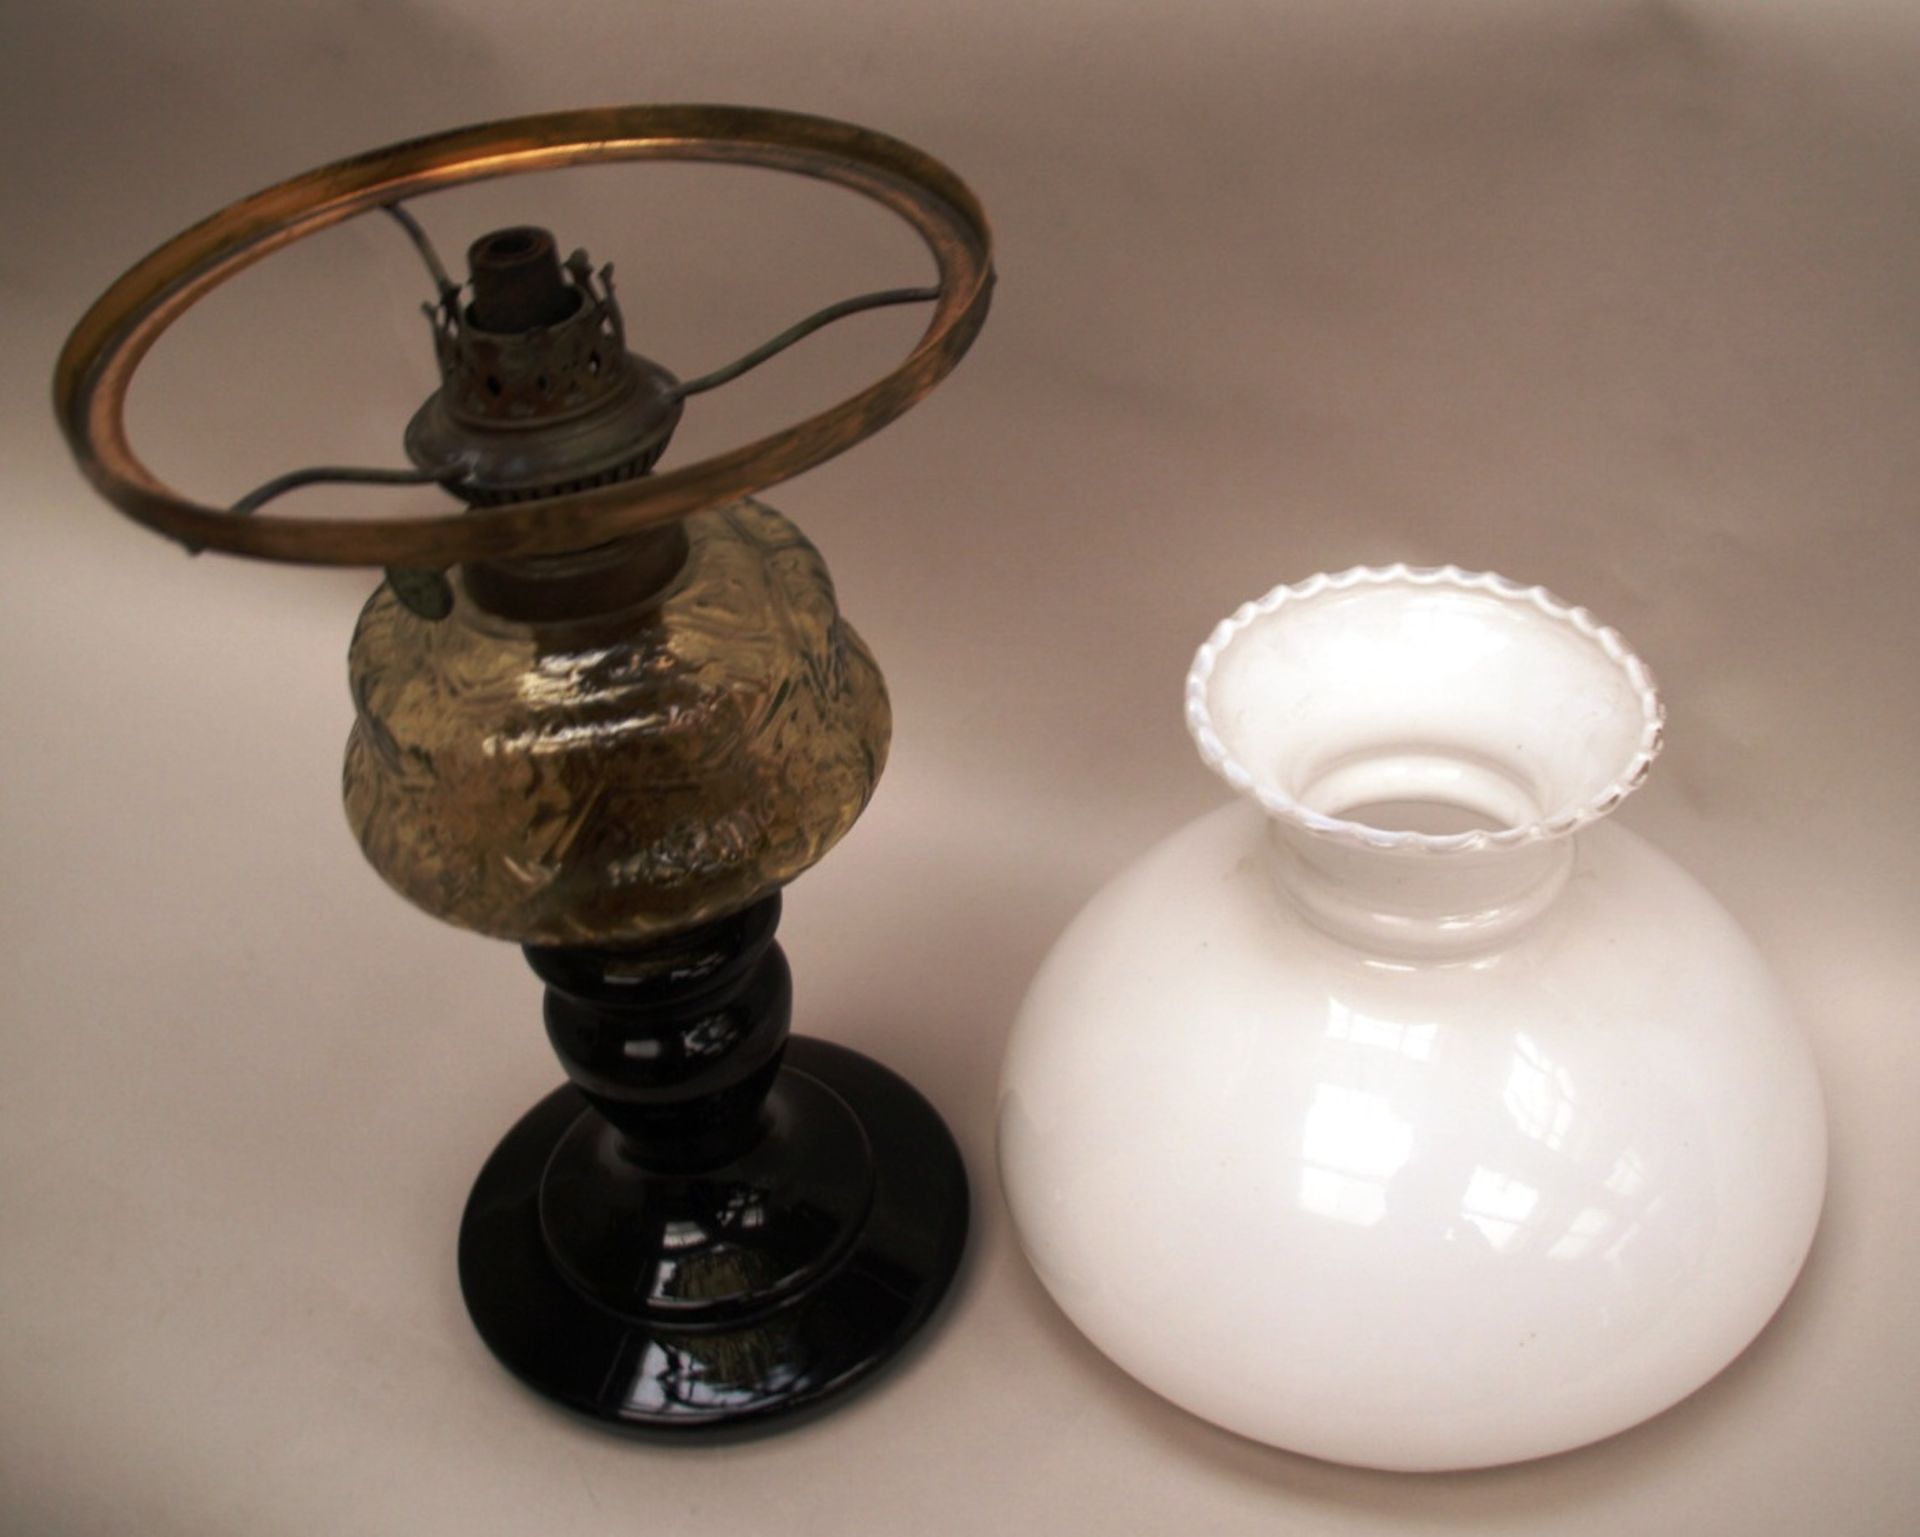 Petroleumlampe - Glas, um 1900, Balusterhohlfuß, Bohrung am Stand mit Beschädigung, Schirm aus - Bild 2 aus 2